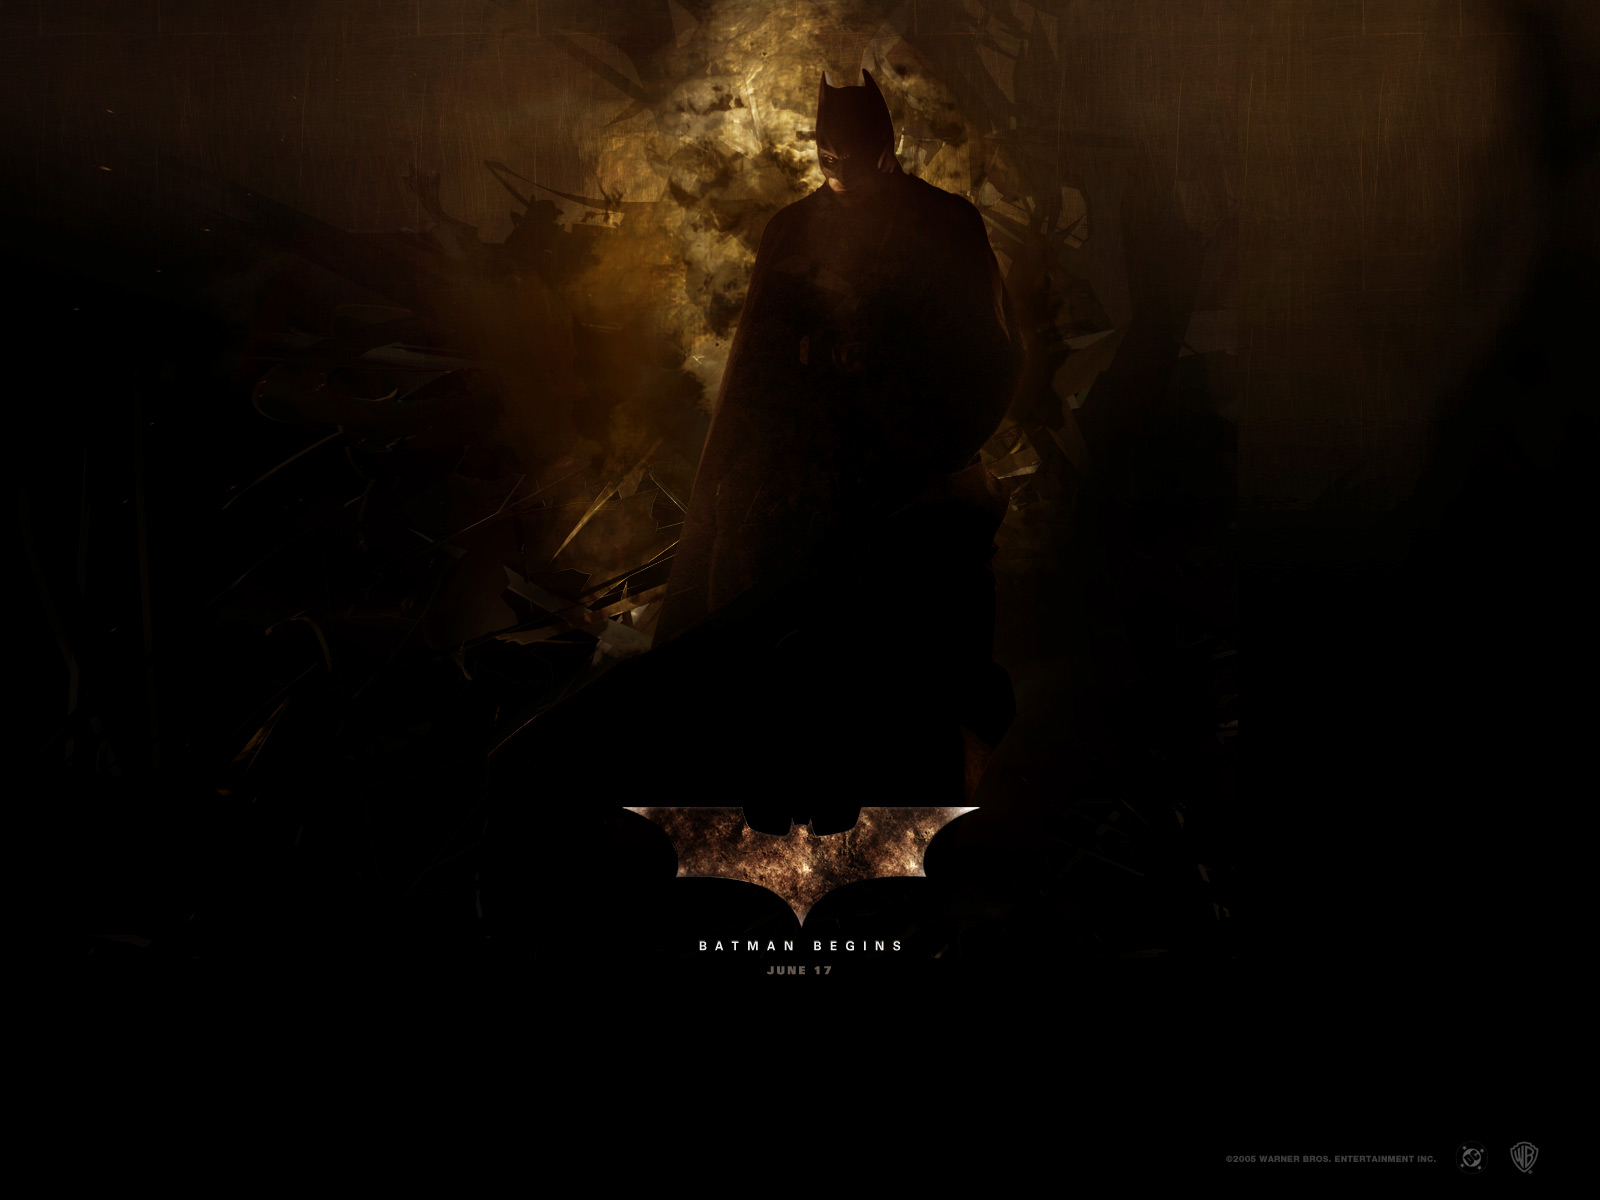 バットマンは壁紙を開始します,闇,黒,空,写真撮影,ルーム